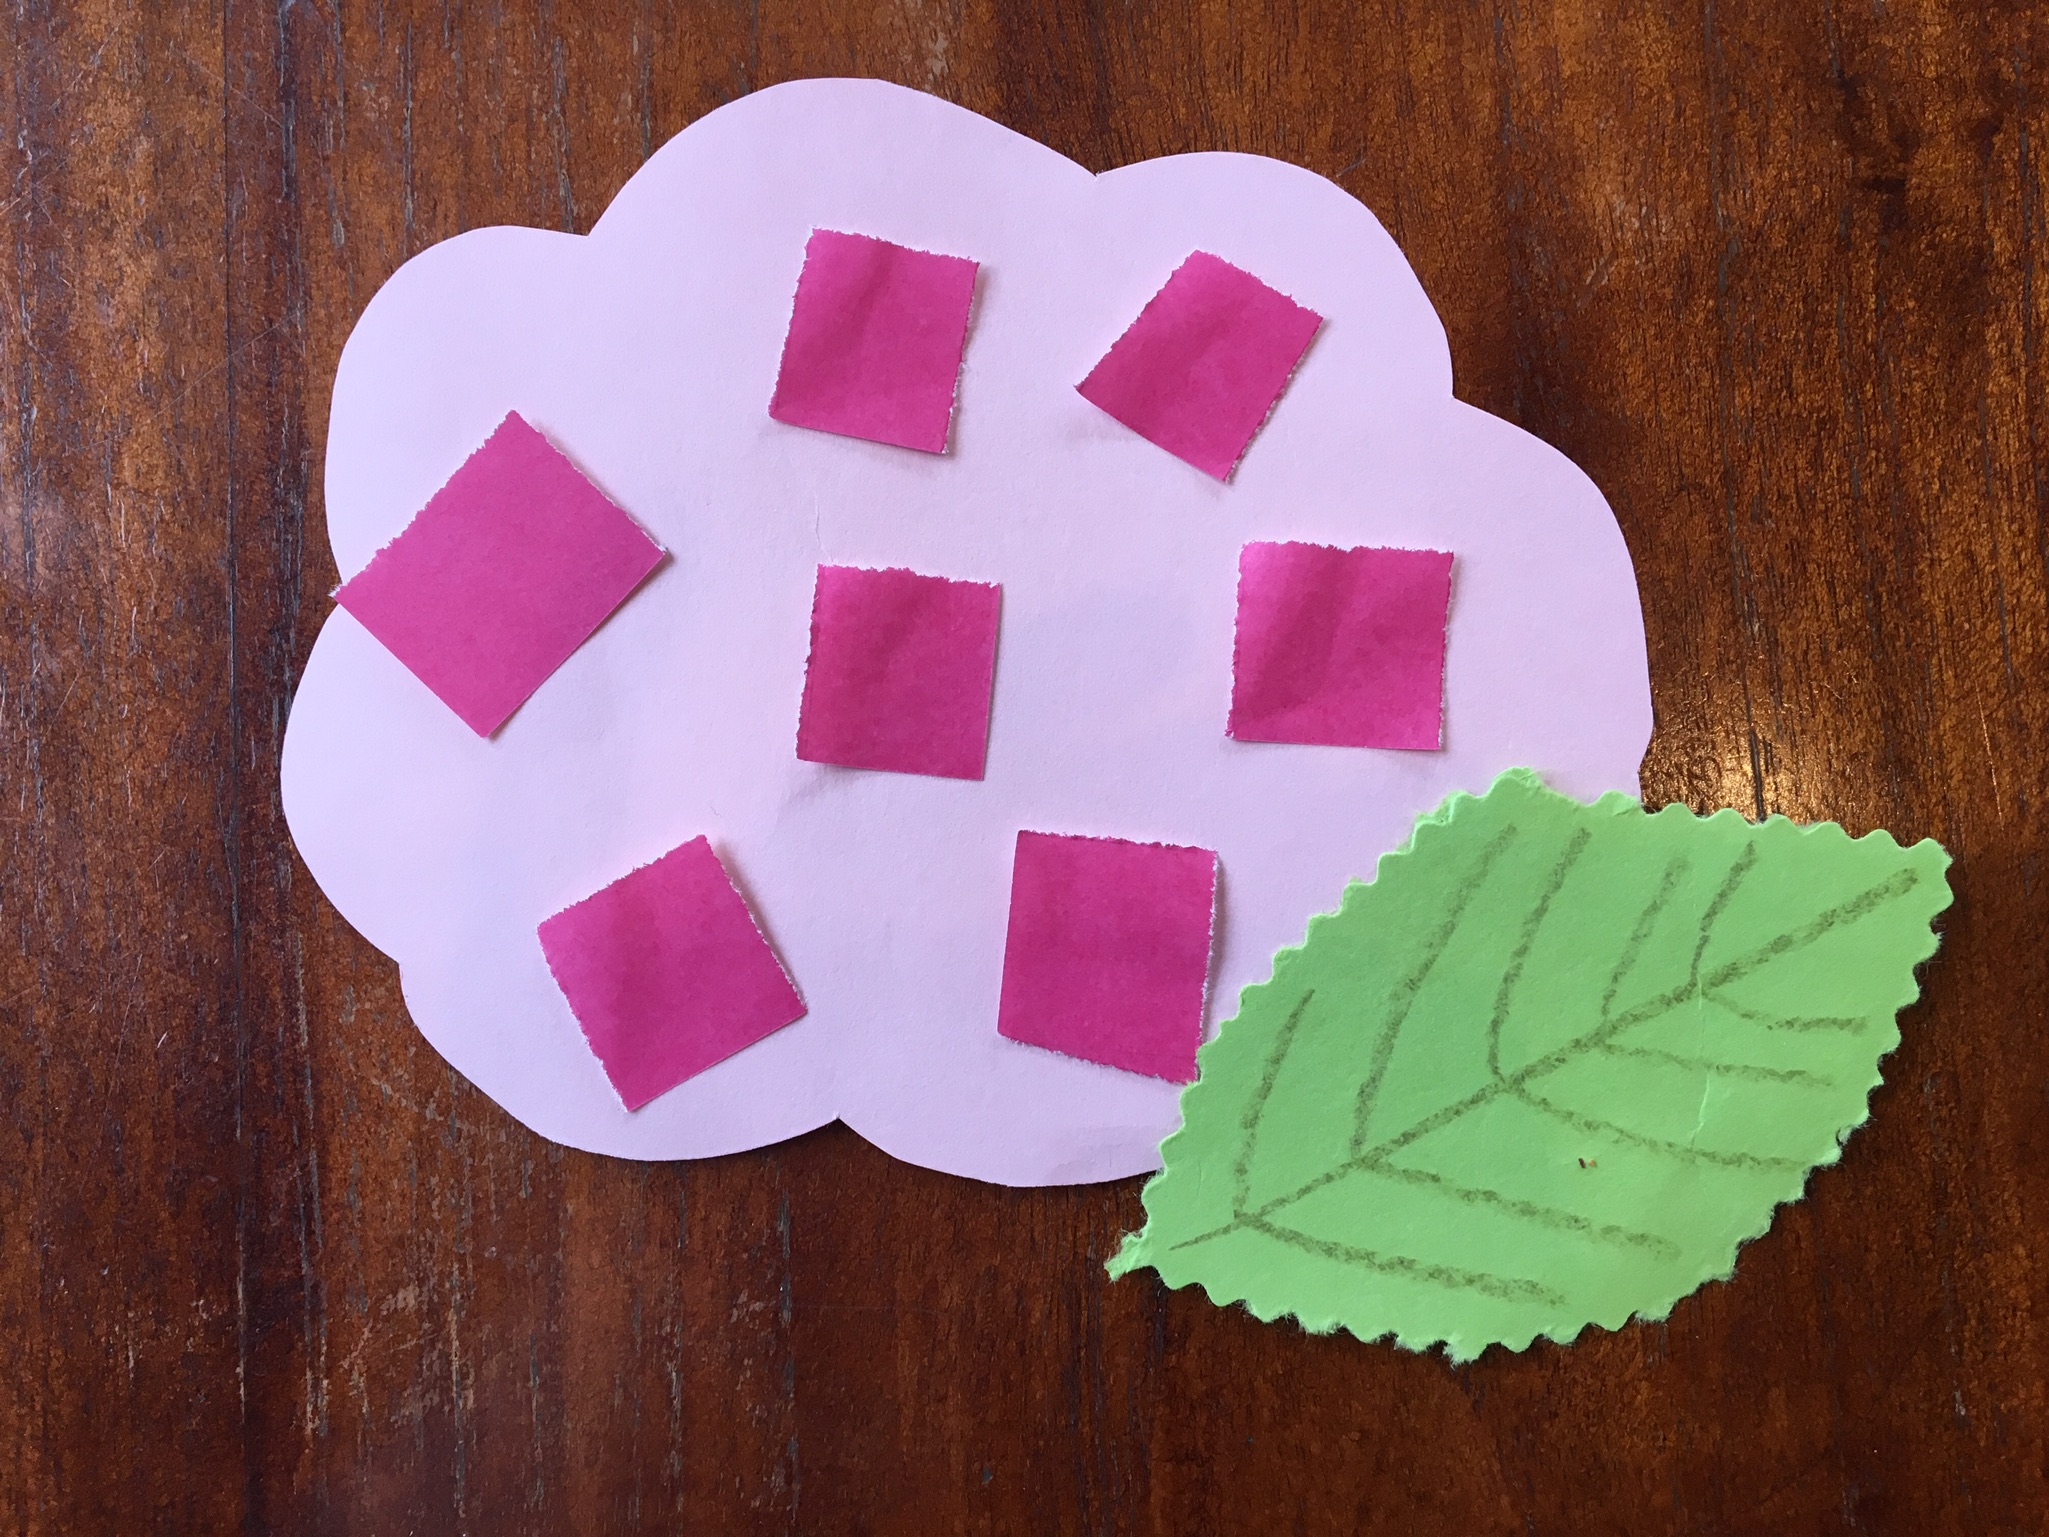 あじさい製作ー１歳児 ２歳児 ３歳児向け 折り紙と画用紙で簡単製作ー